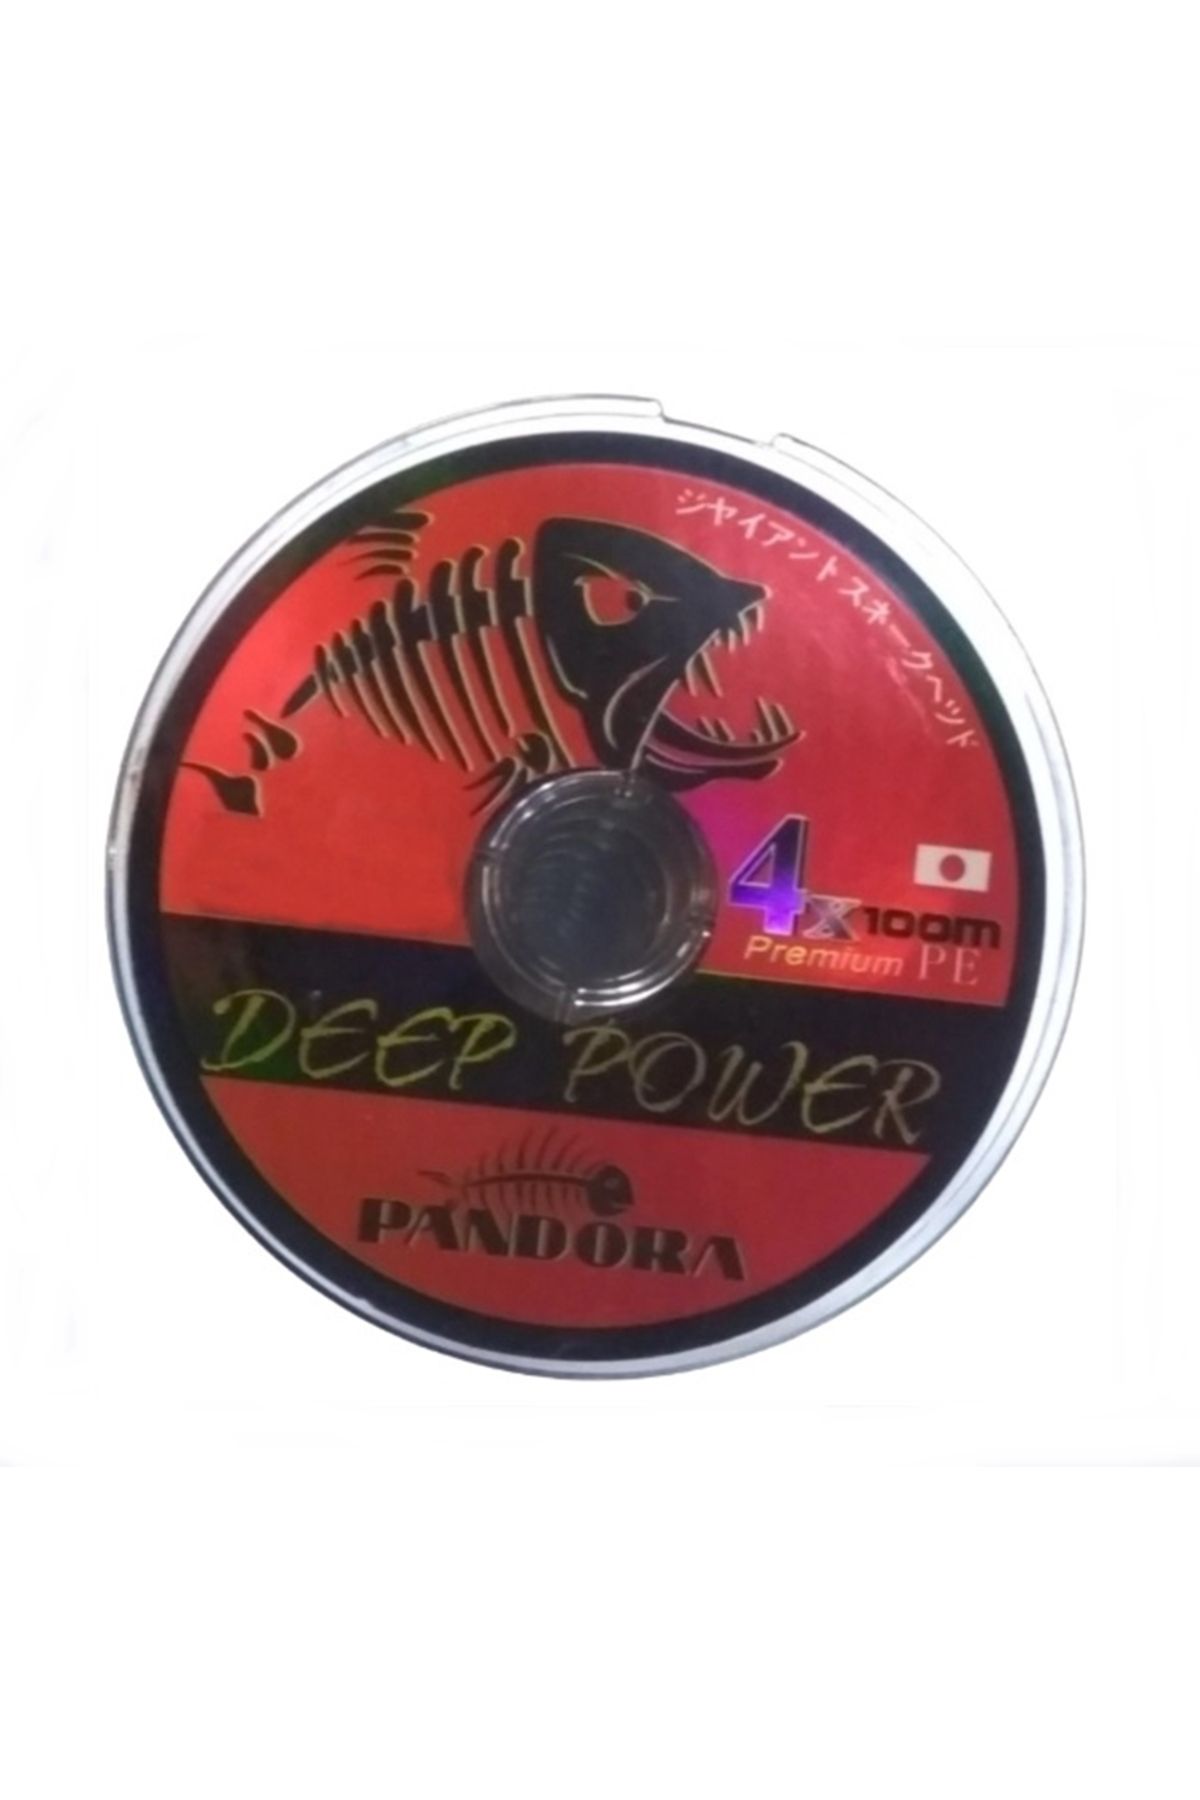 Pandora DEEP POWER 4X -100MT İPEK MİSİNE-18MM-11,6KĞ TEST